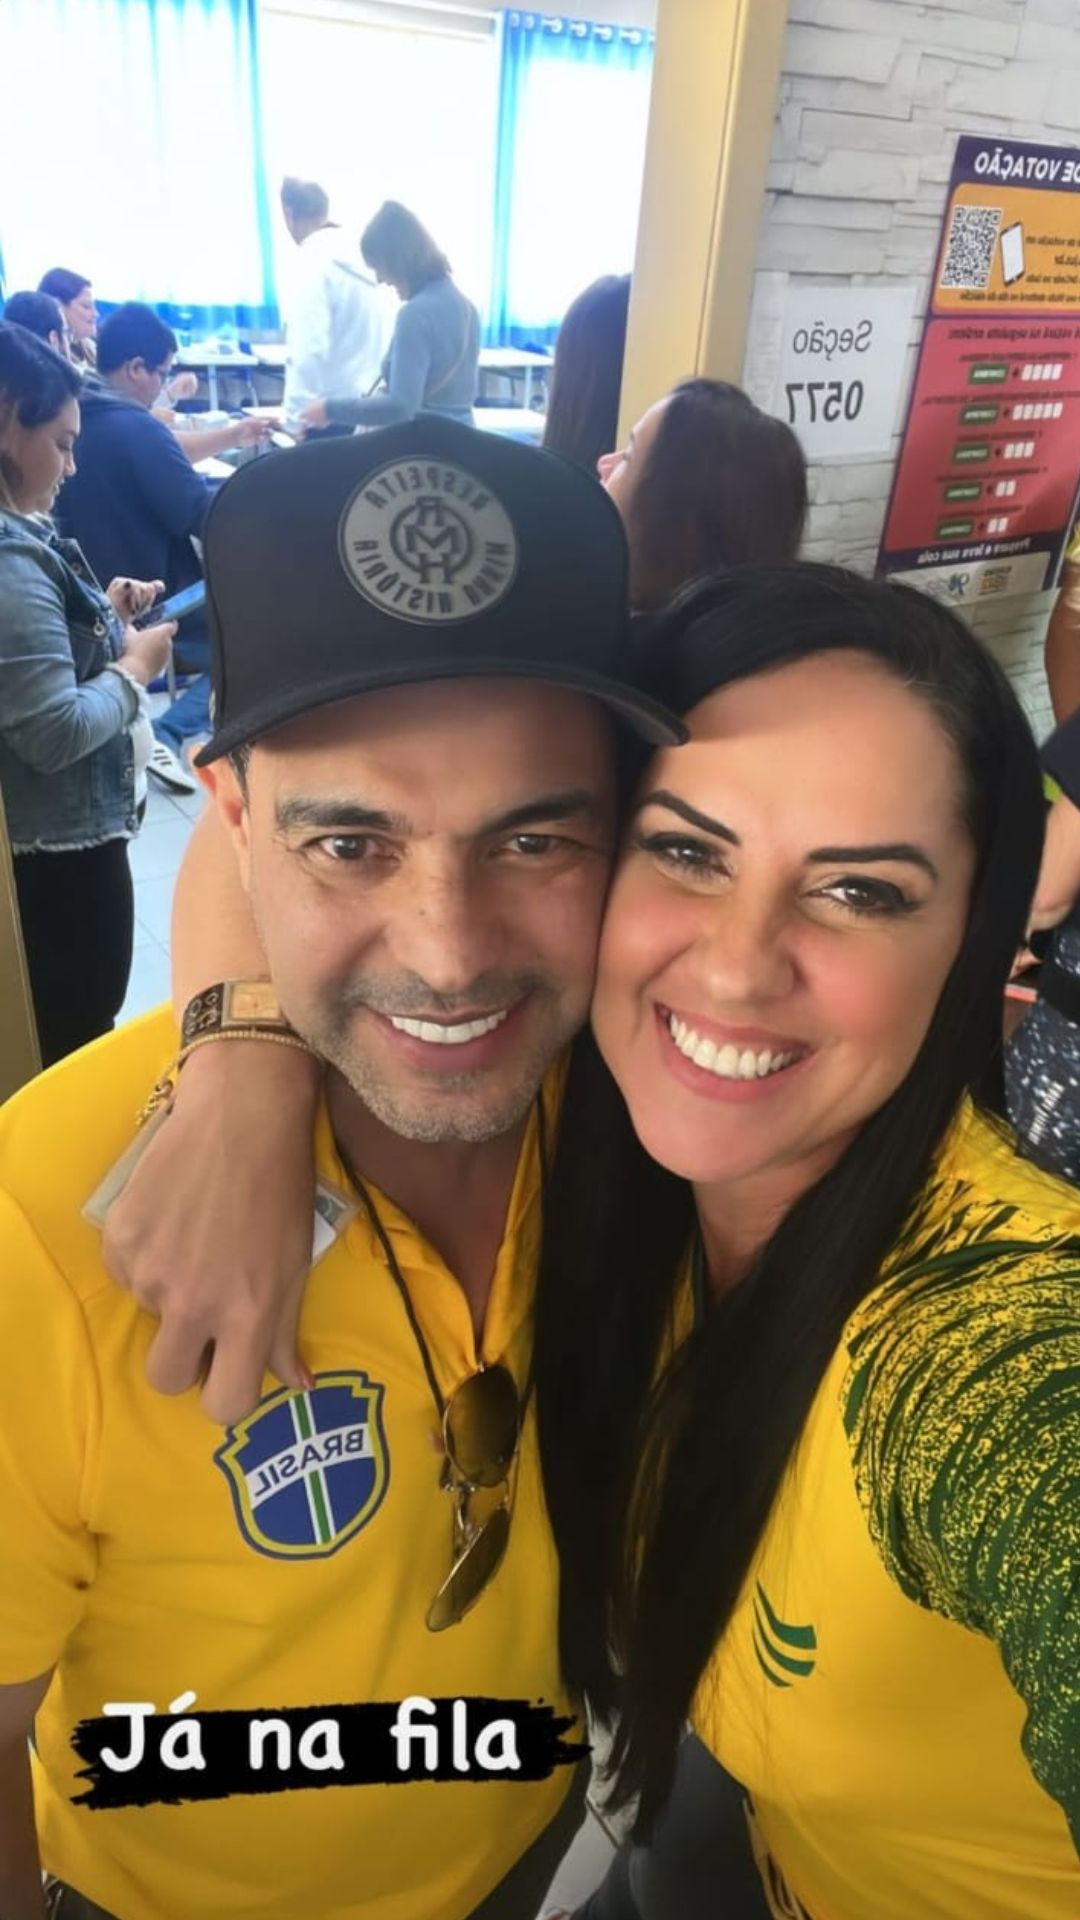 Graciele Lacerda e Zezé Di Camargo votando nas eleições Reprodução/Instagram - 02.10.2022